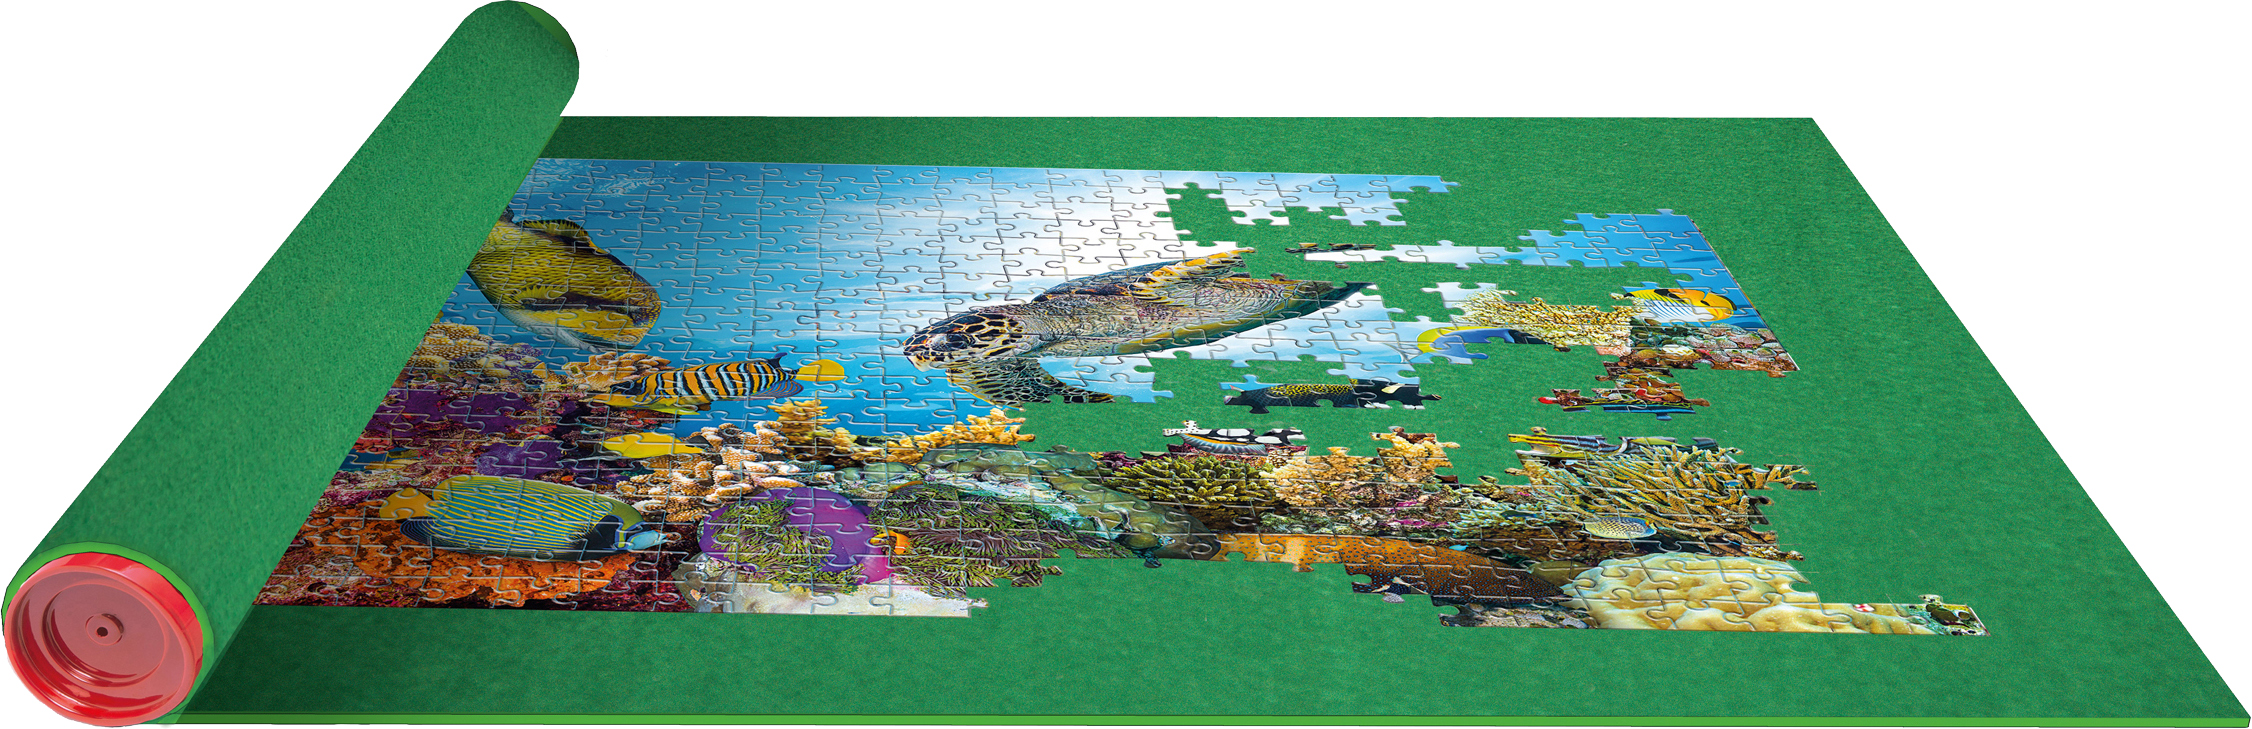 Mehrfarbig CLEMENTONI universal Teile Puzzle Puzzlematte, Matte bis 2000